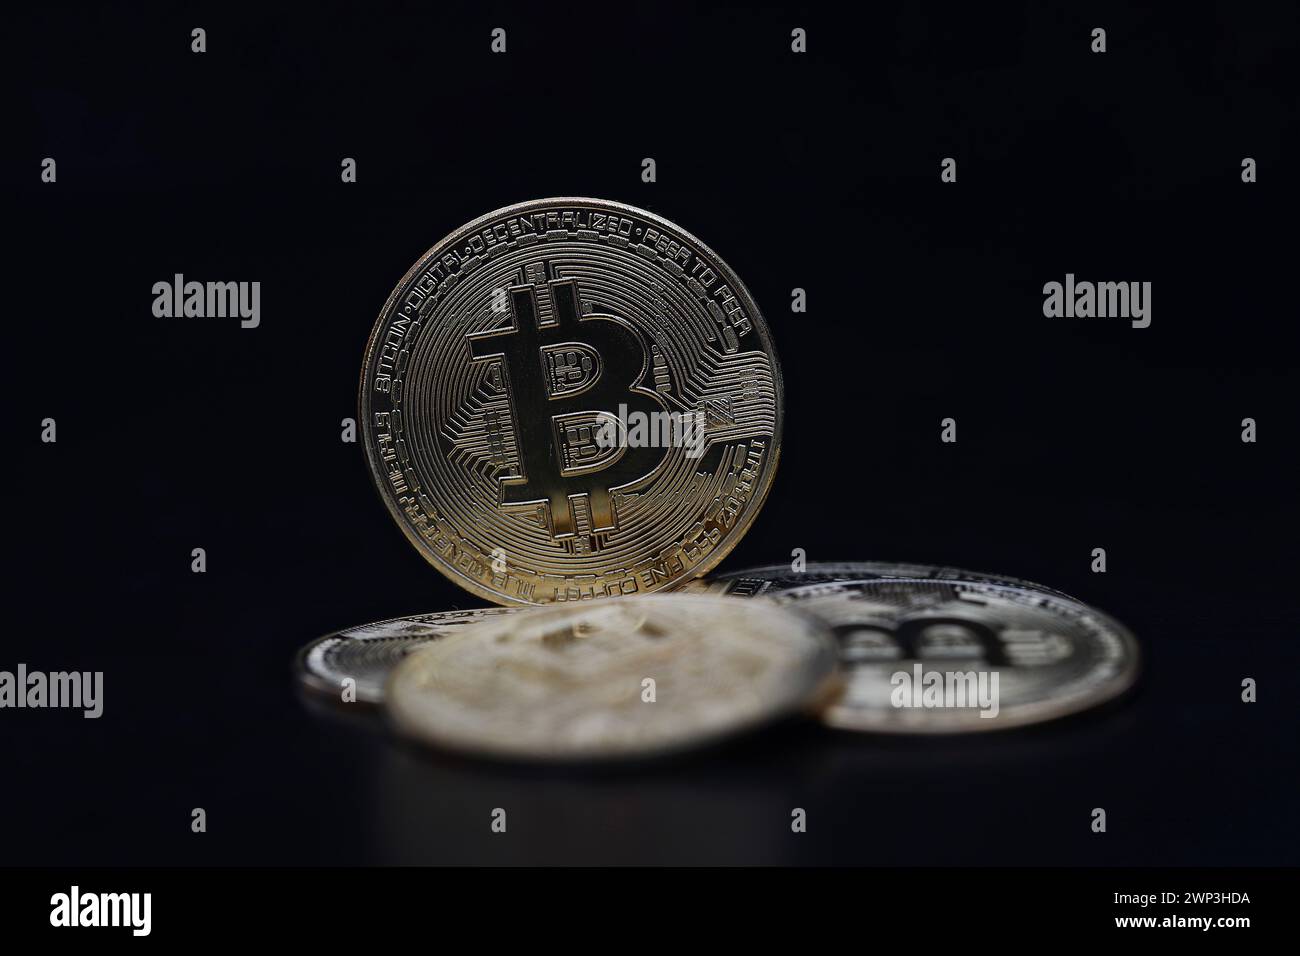 Symbolbild: Bitcoin diversi - Der Bitcoin steht hoch im Kurs. Selbst Finanzdienstleister wie PayPal wollen die Kryptowährung als Zahlungsmittel zuzu Foto Stock